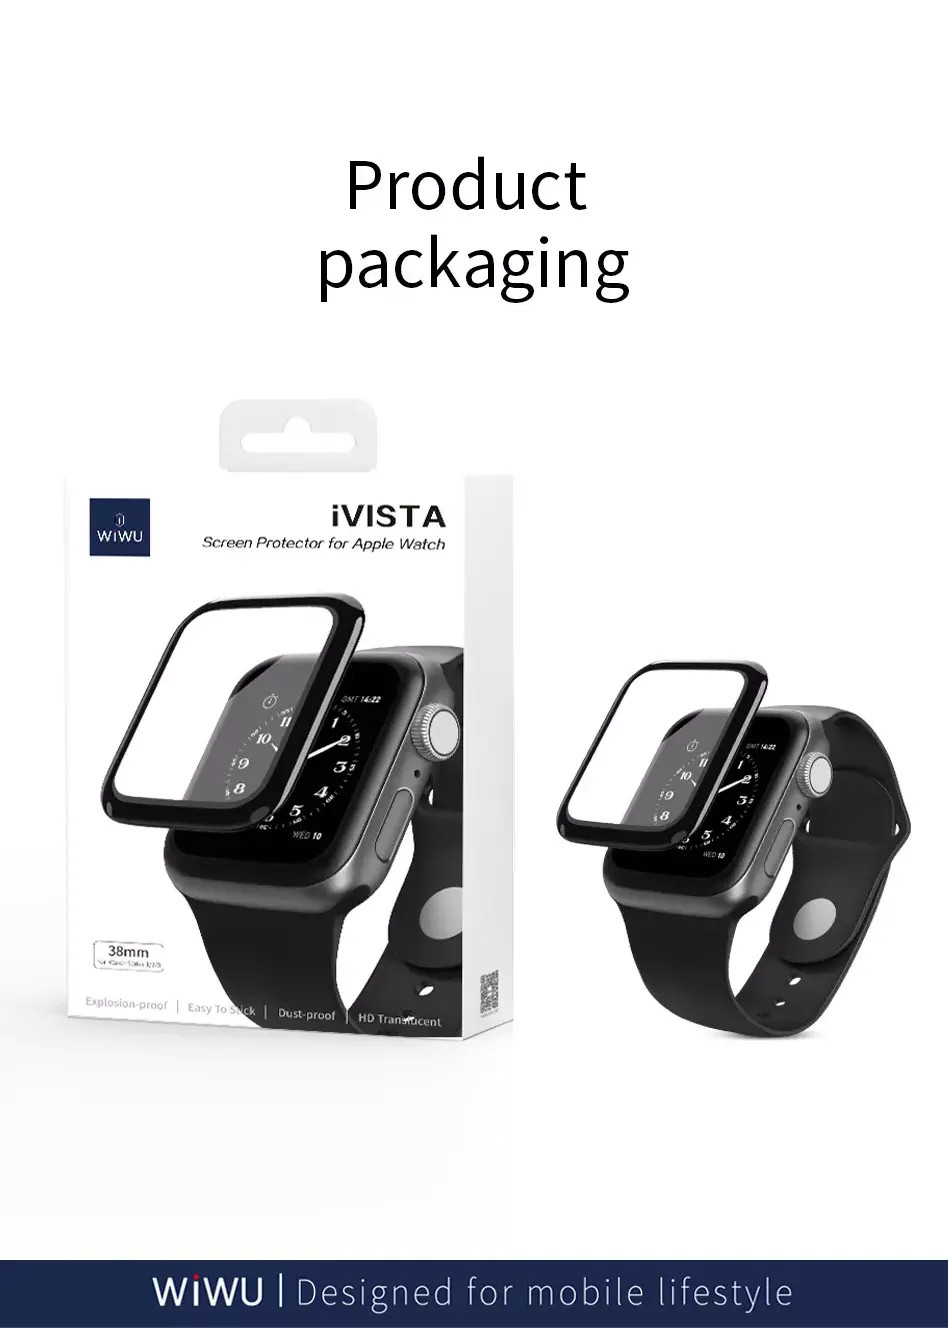 Bộ 2 miếng dán màn hình kính cường lực Full 3D cho Apple Watch 38mm hiệu WIWU iVista